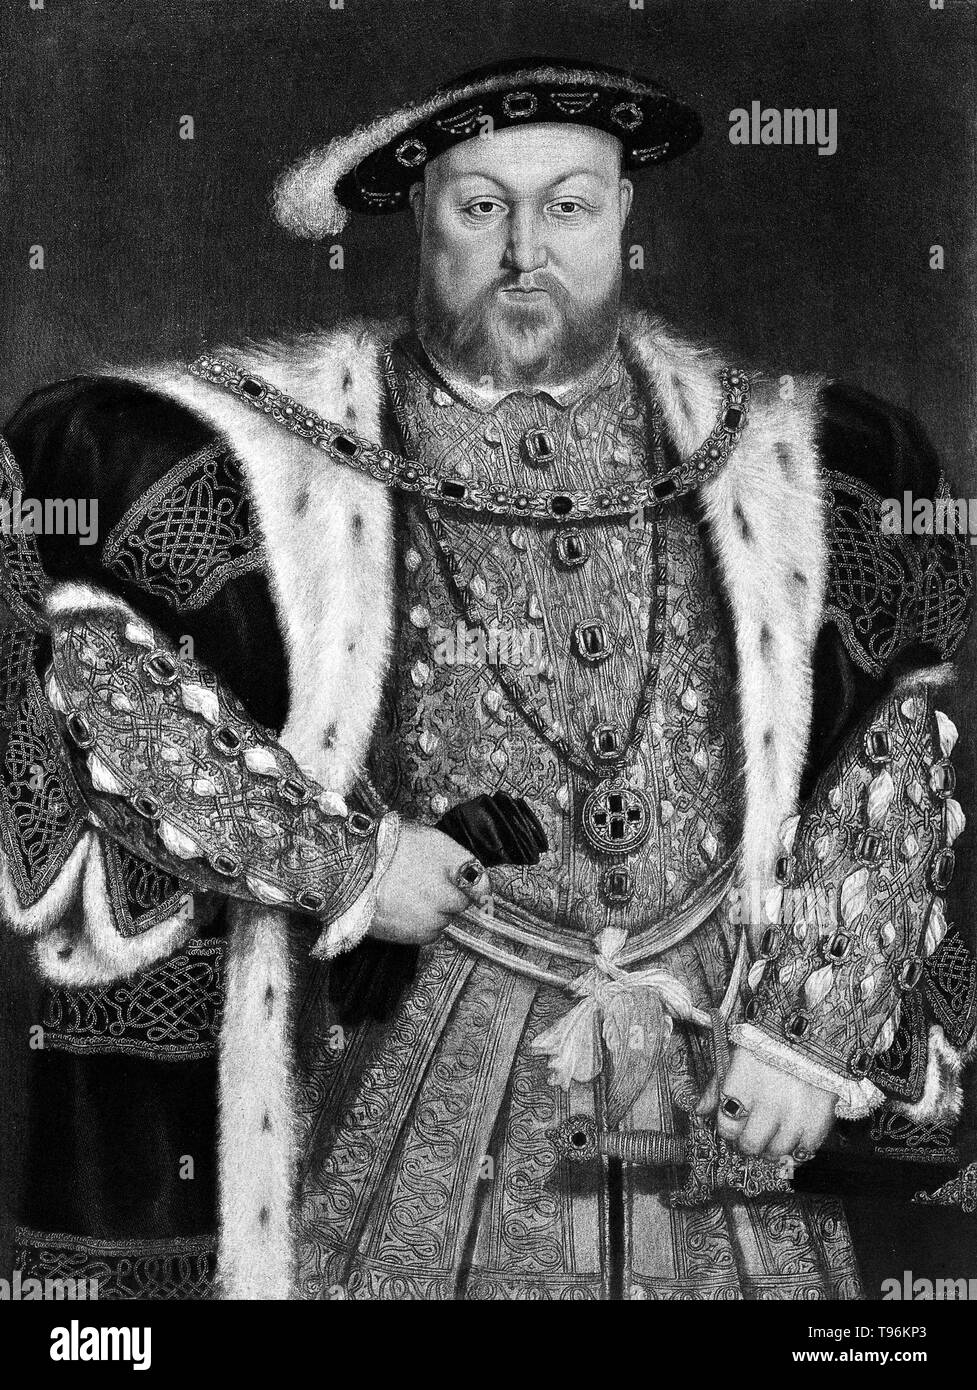 Ritratto di Re Enrico VIII nella Collezione Reale di Windsor. Henry VIII (Giugno 28, 1491 - 28 gennaio 1547) era il re d'Inghilterra dal 1509 fino alla sua morte. Henry è meglio conosciuta per i suoi sei matrimoni, in particolare i suoi sforzi per avere il suo primo matrimonio, Caterina d'Aragona, annullata. Il suo disaccordo con il Papa sulla questione di un tale annullamento Henry led per avviare la riforma inglese, separando la chiesa di Inghilterra da autorità papale. Foto Stock